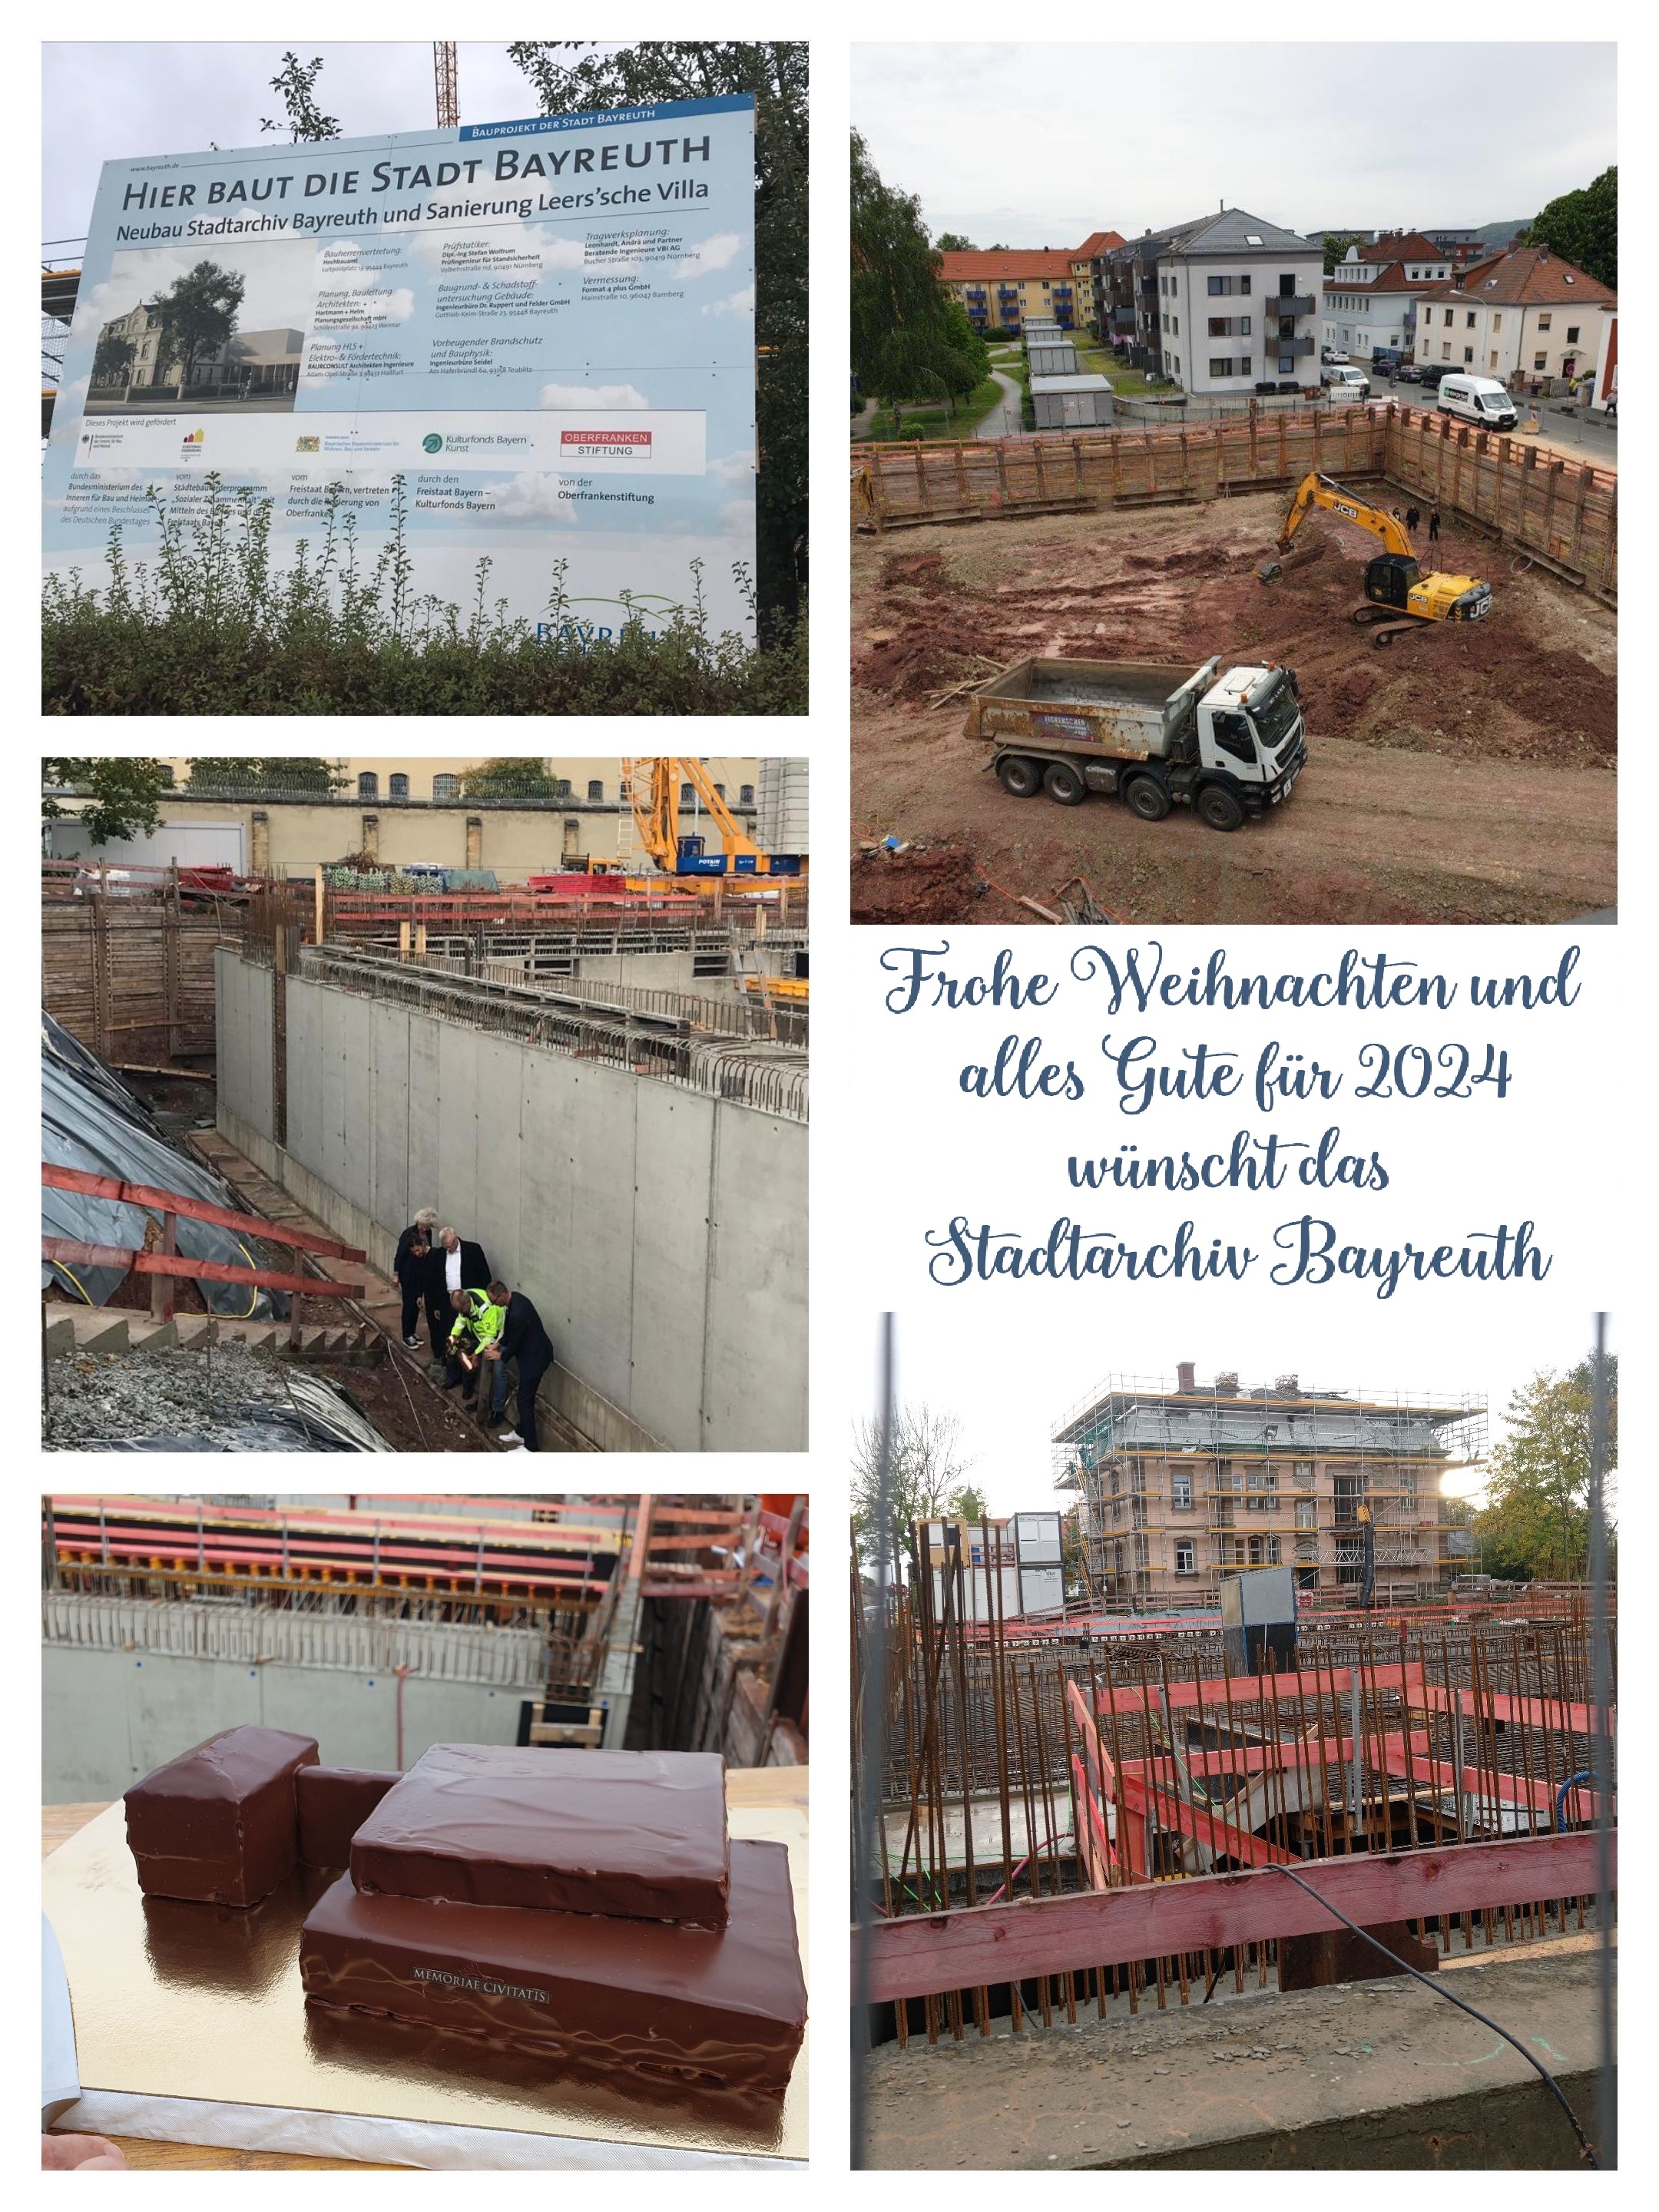 Bildcollage des Baufortschritts des neuen Stadtarchivs in der Bernecker Straße). Blicke auf Baugrube, Baustelle, Villa und einem Kuchenmodell